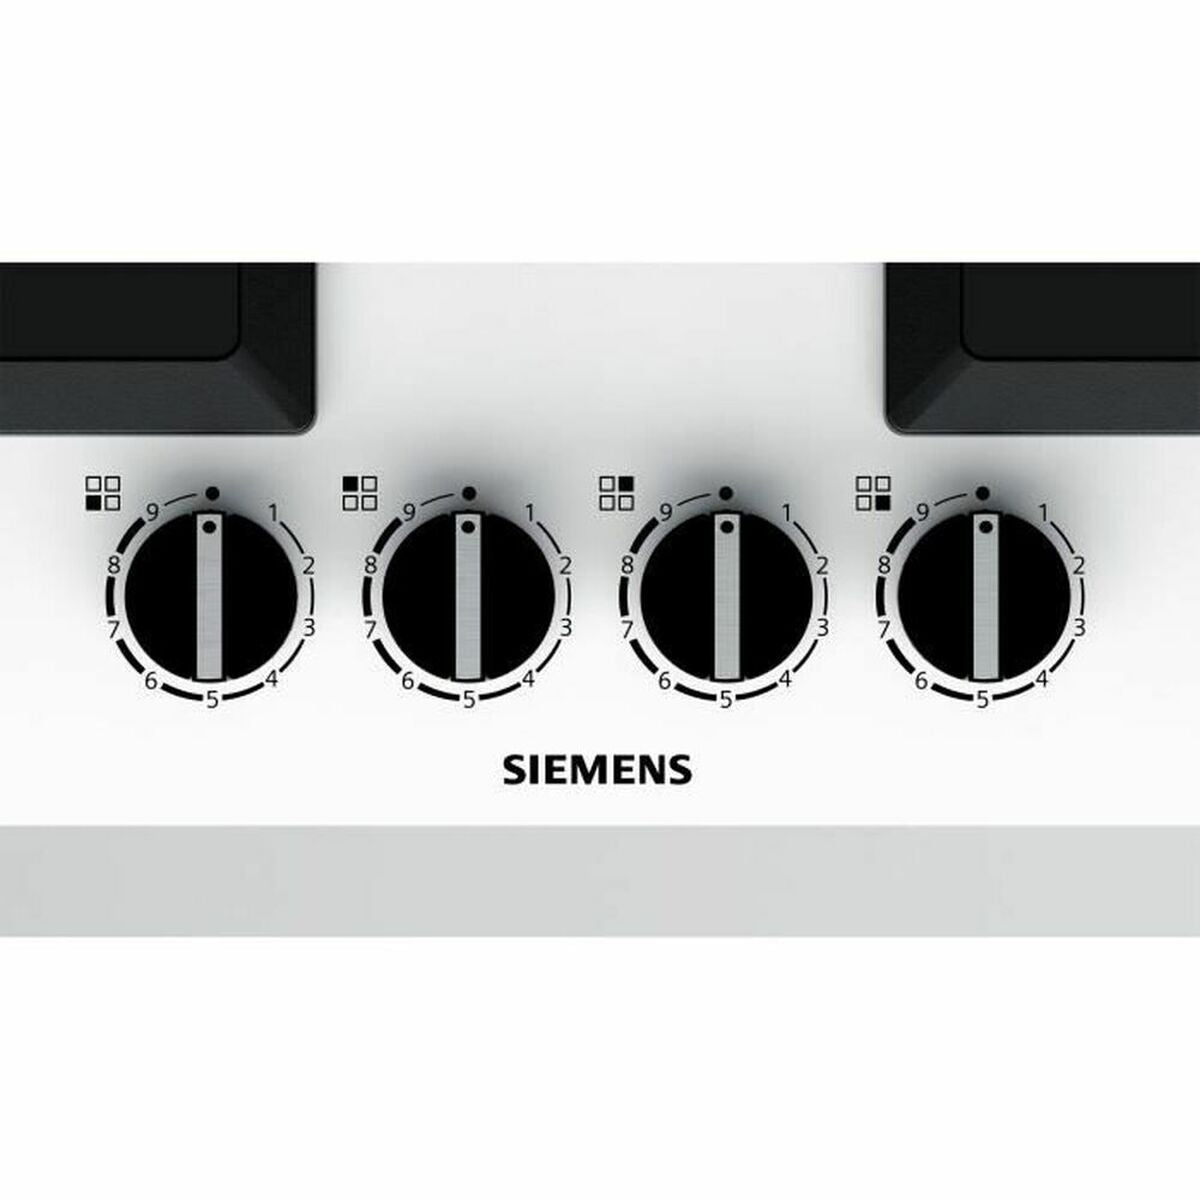 Gāzes plīts virsma Siemens AG EP6A2PB20 59 x 52 cm 1000 W 7500 W